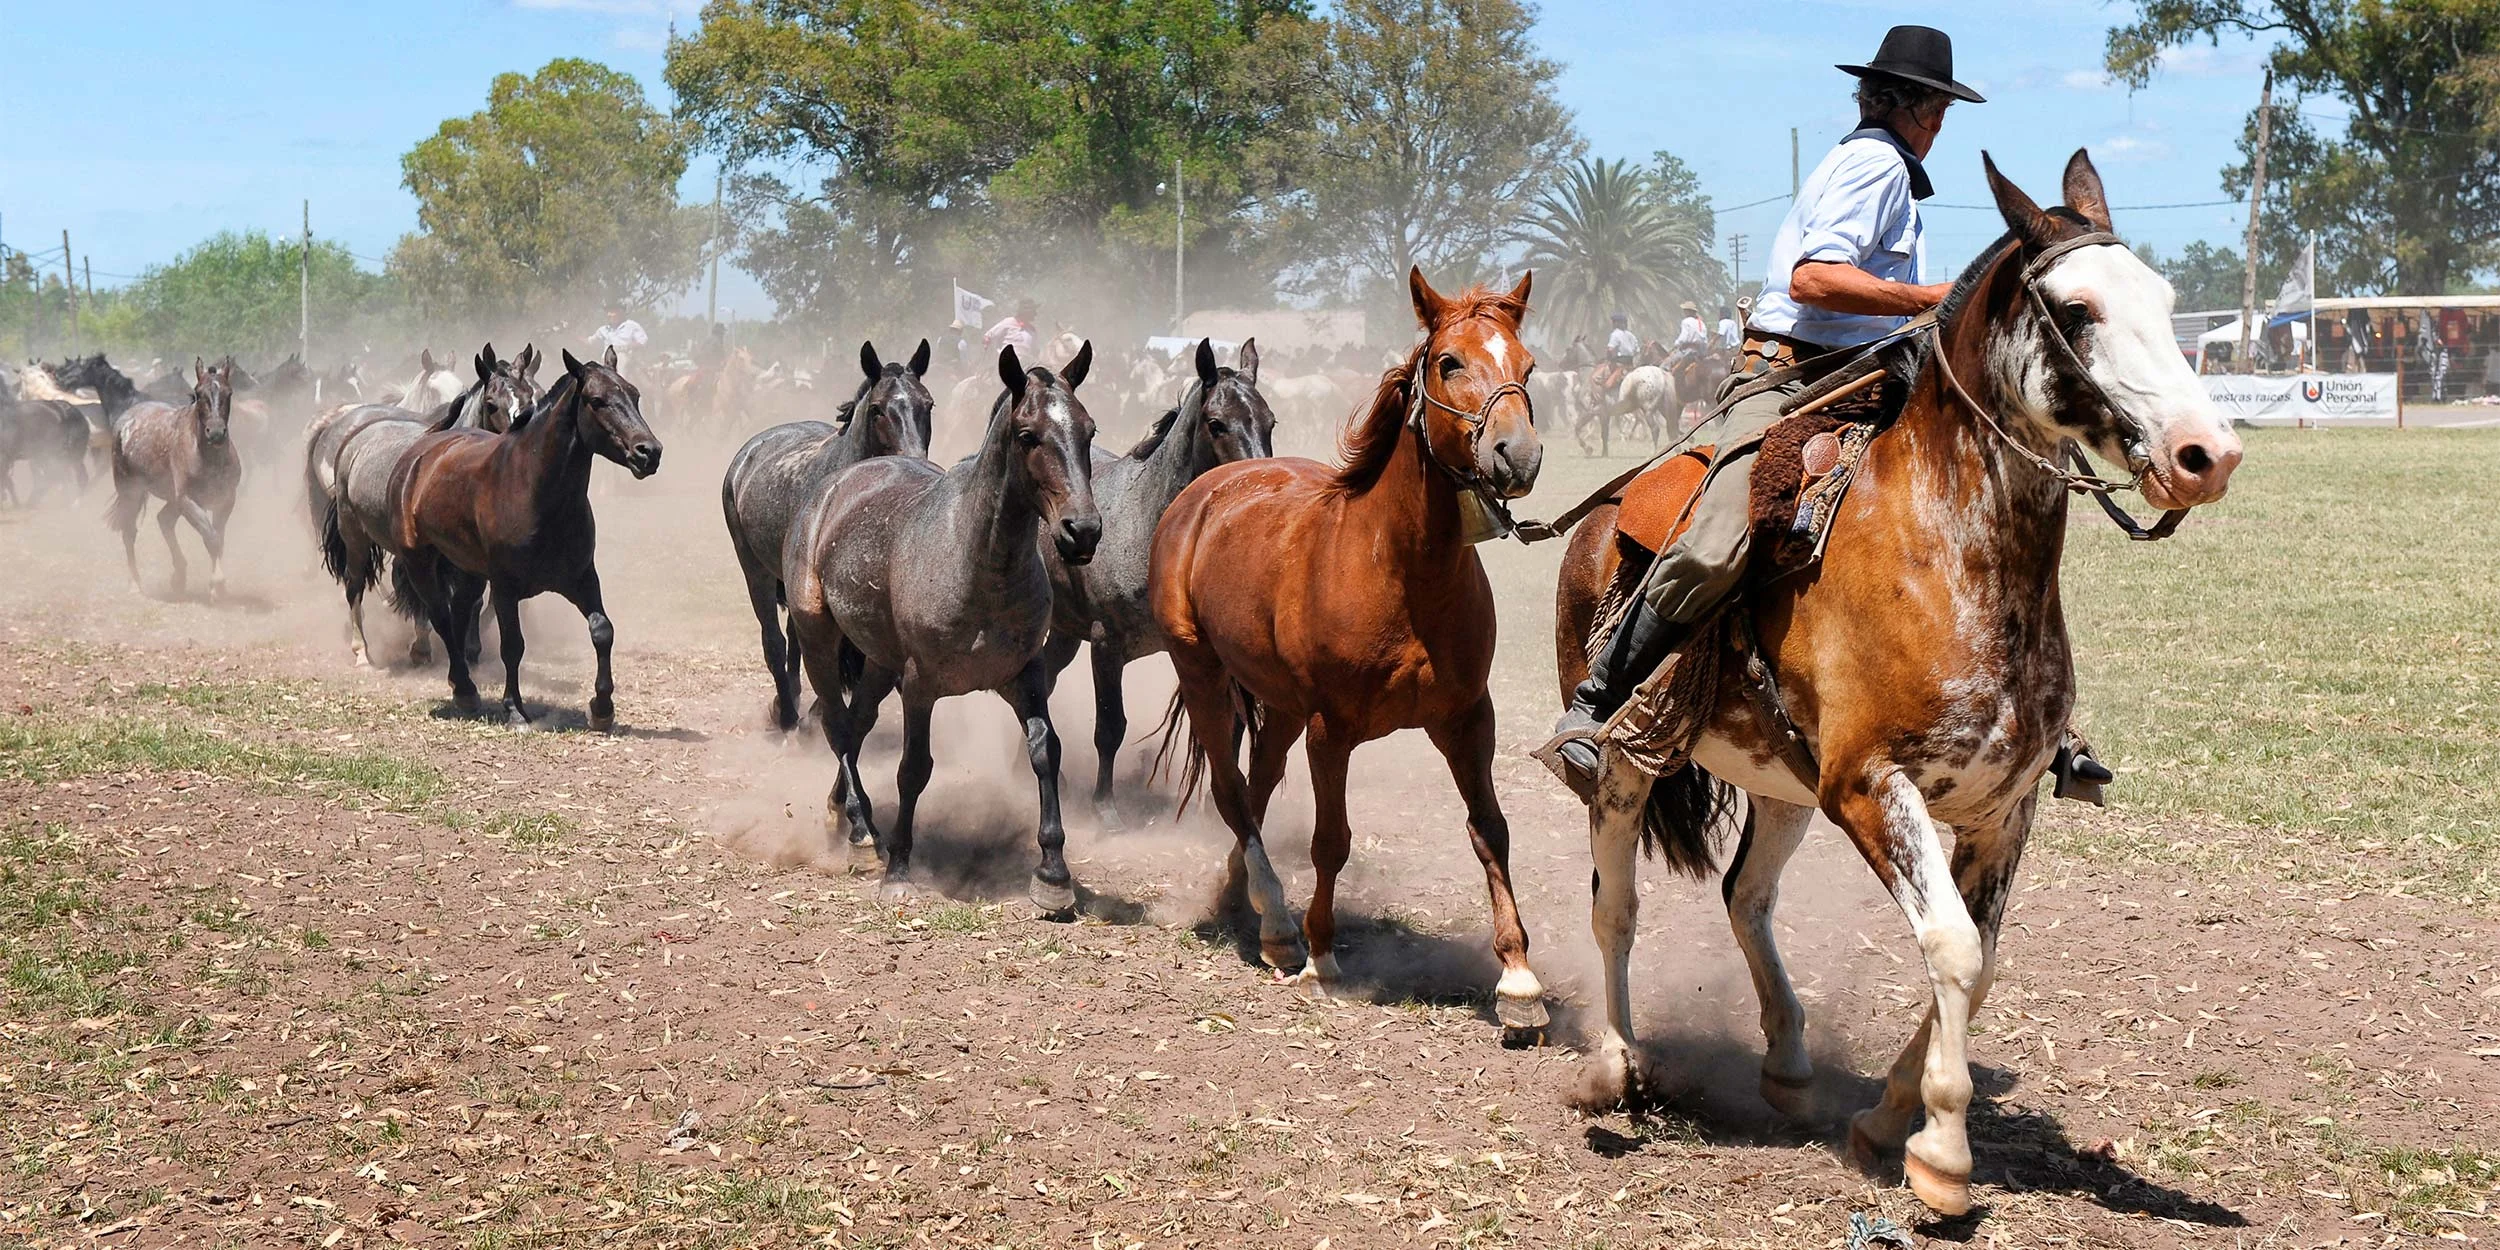 Horses in Argentina